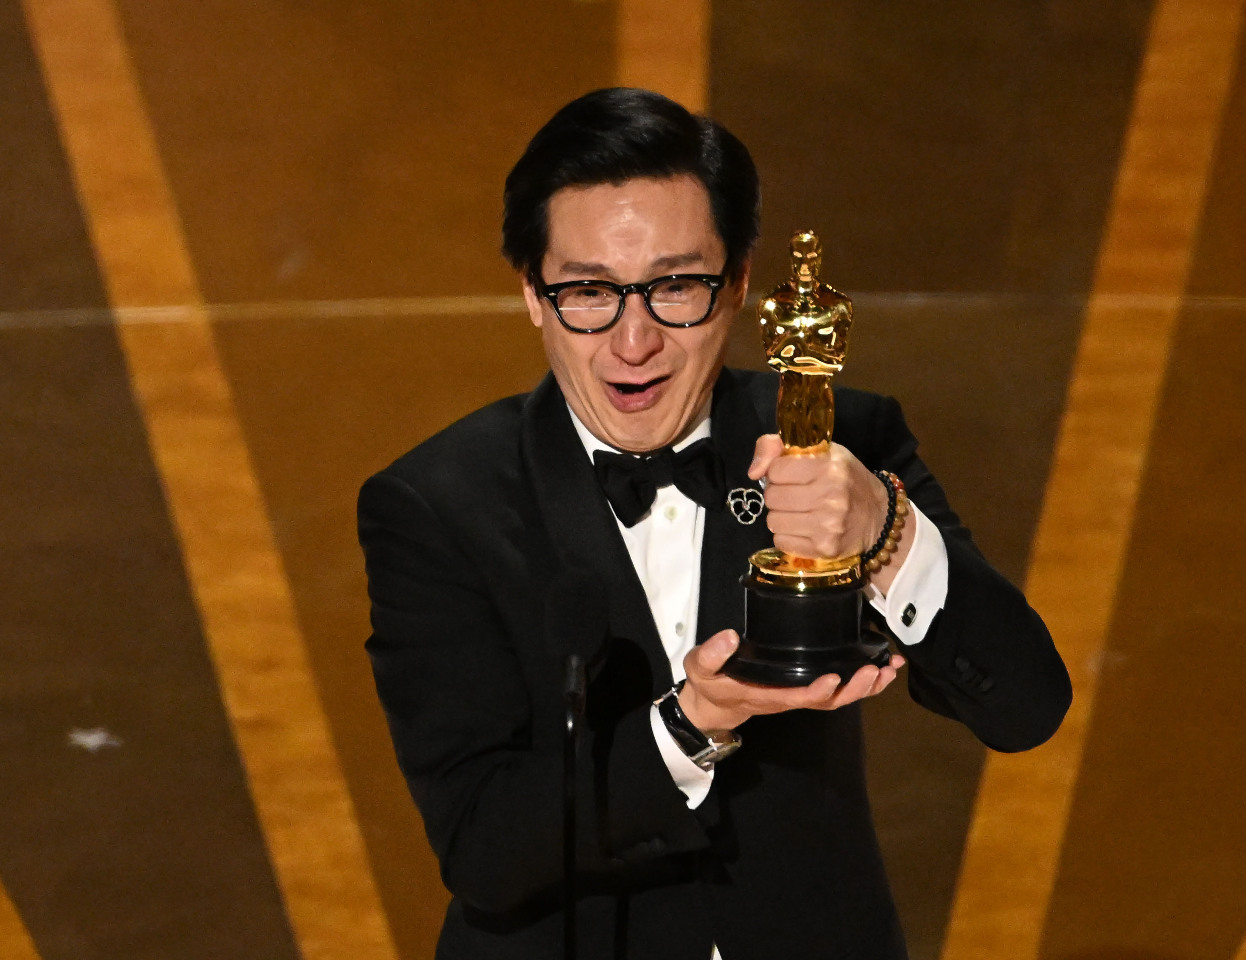 Ánh hào quang châu Á: diễn viên Quan Kế Huy đoạt giải Oscar ở hạng mục Nam phụ xuất sắc nhất